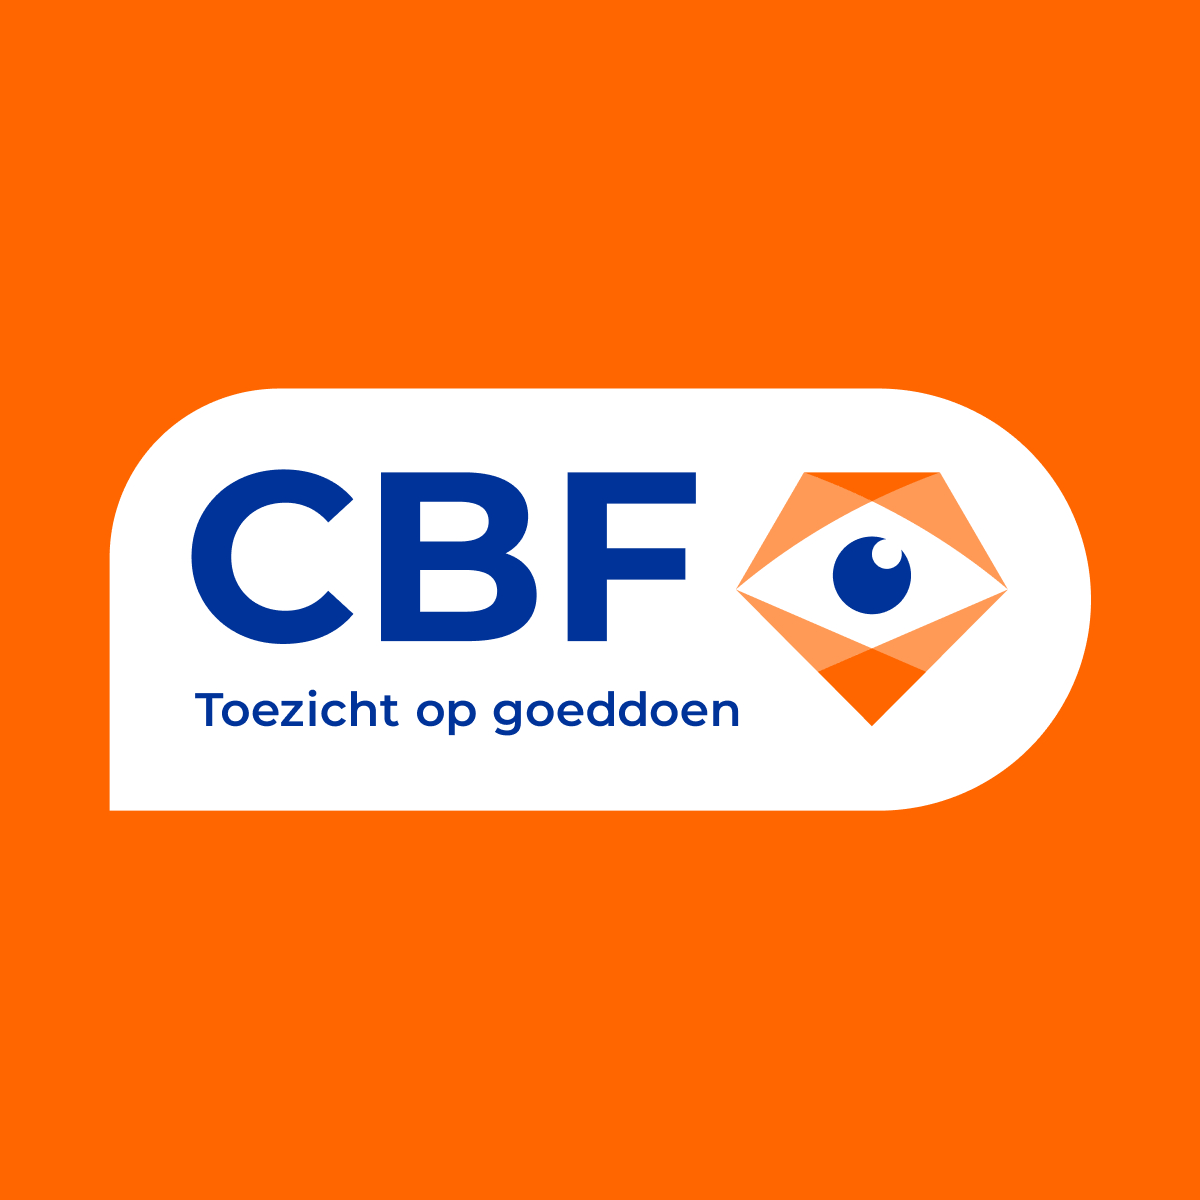 (c) Cbf.nl